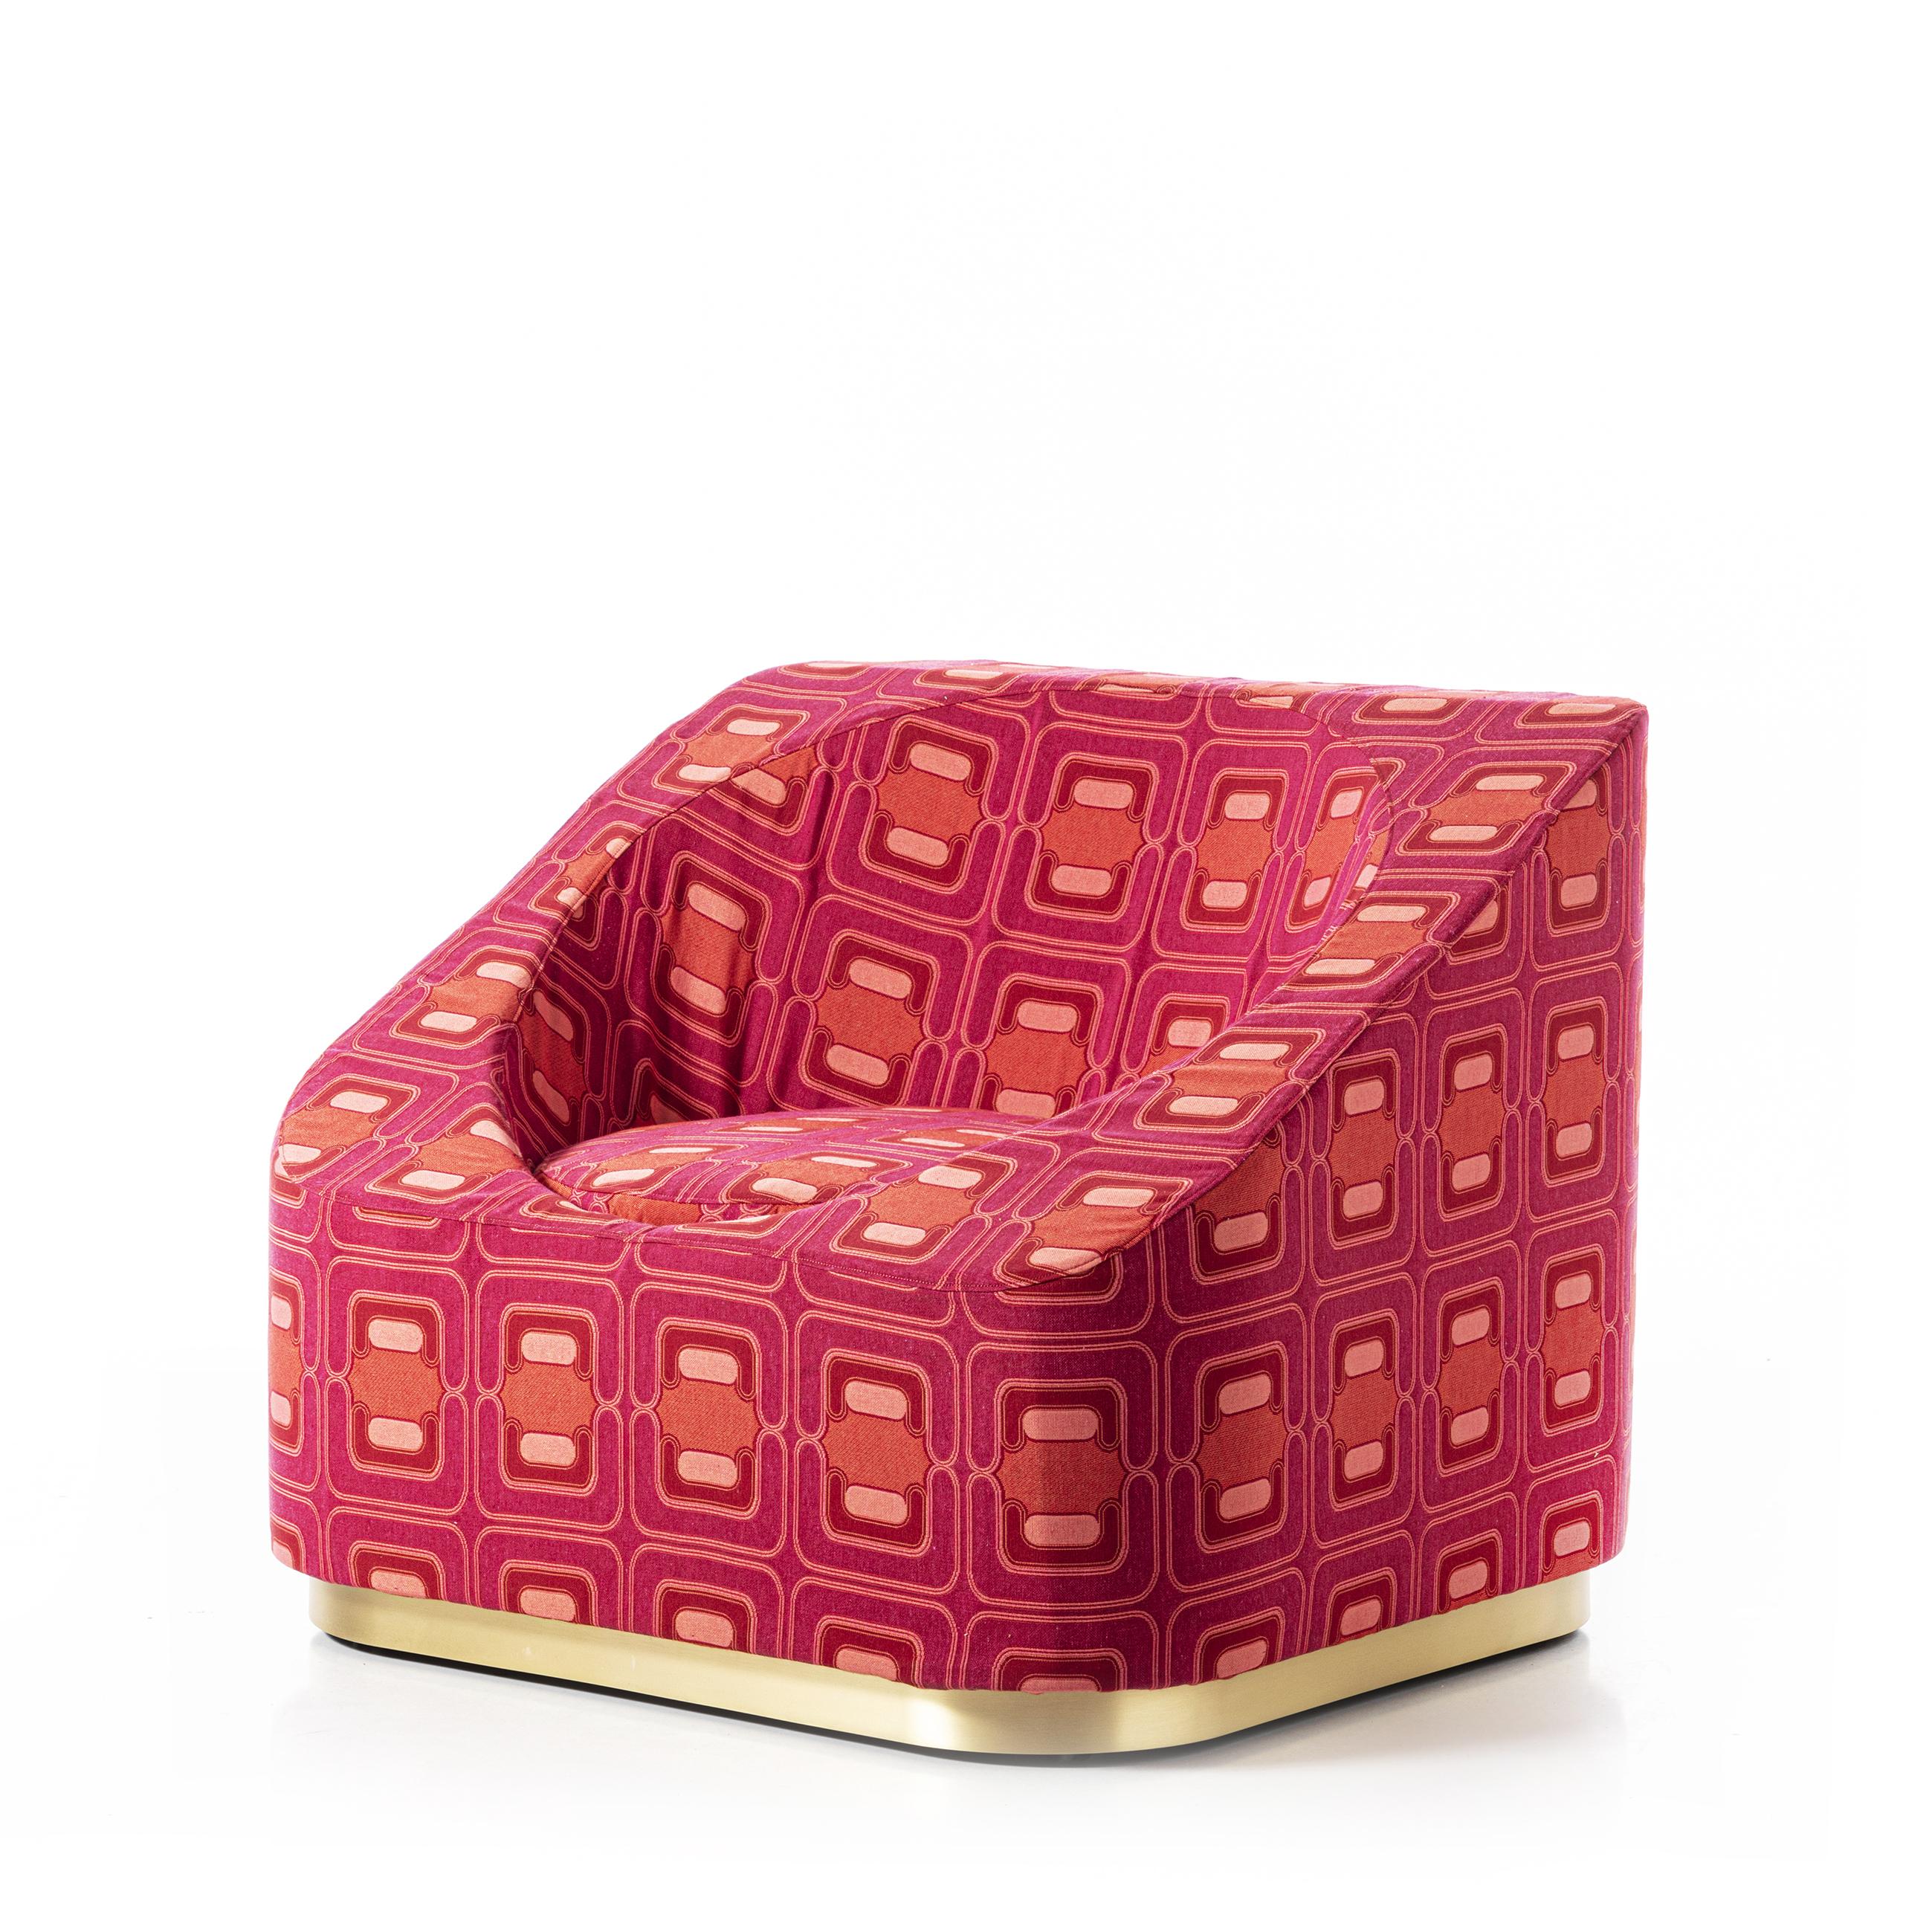 Dieser extrem leichte Loungesessel ist ein Statement im Vintage-Design. 
Mit wenigen Linien, die das runde Innere und die quadratische Außenform definieren, kann dieser Sessel in einem modernen Interieur als wichtiges Vintage-Element glänzen, wenn